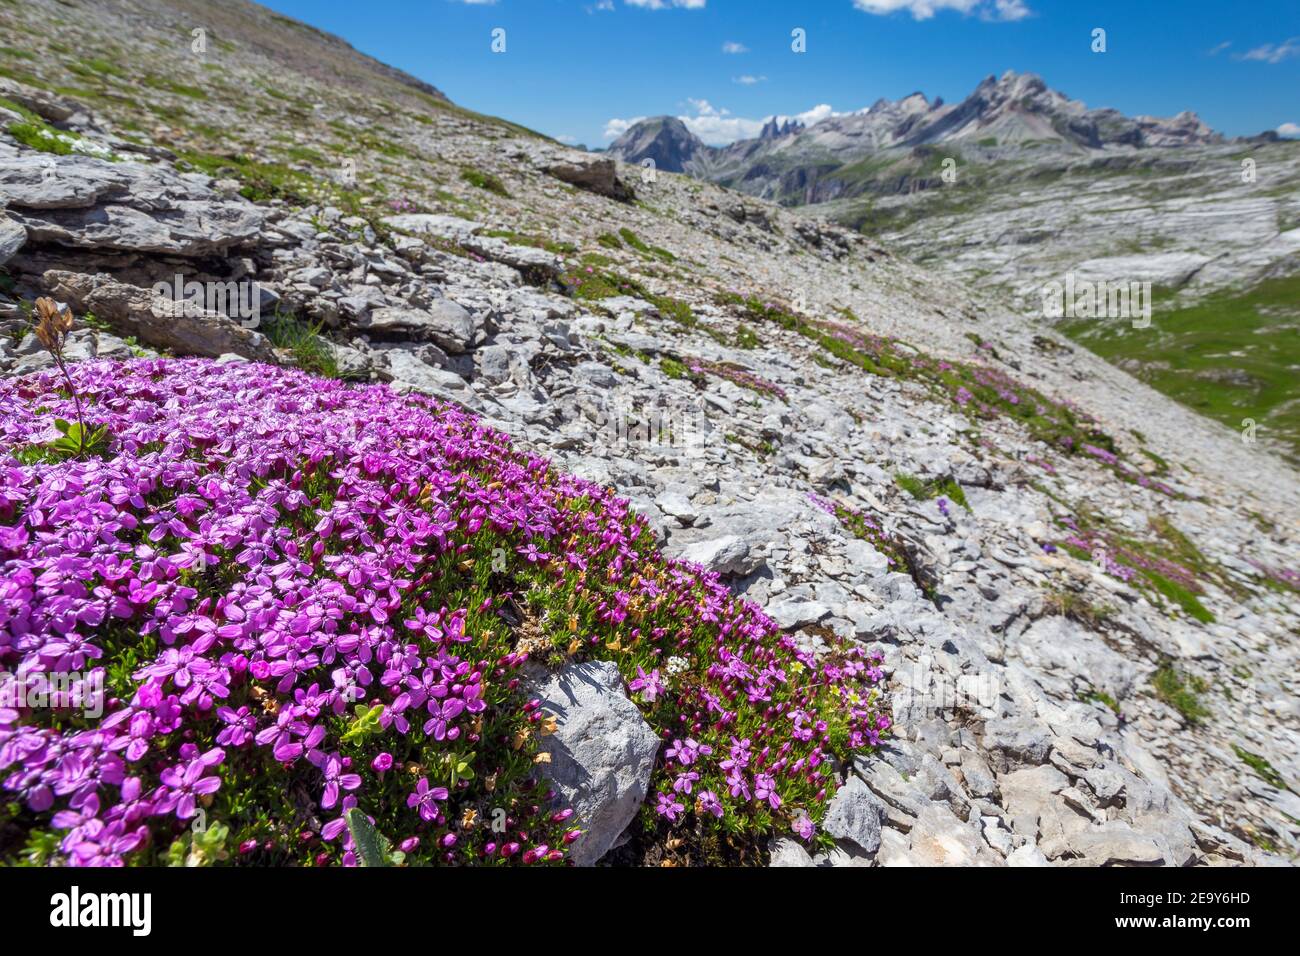 Floraison de Silene acaulis, plante alpine porteuse. Les Dolomites du parc naturel de Puez-Odle. Alpes italiennes. Europe. Banque D'Images